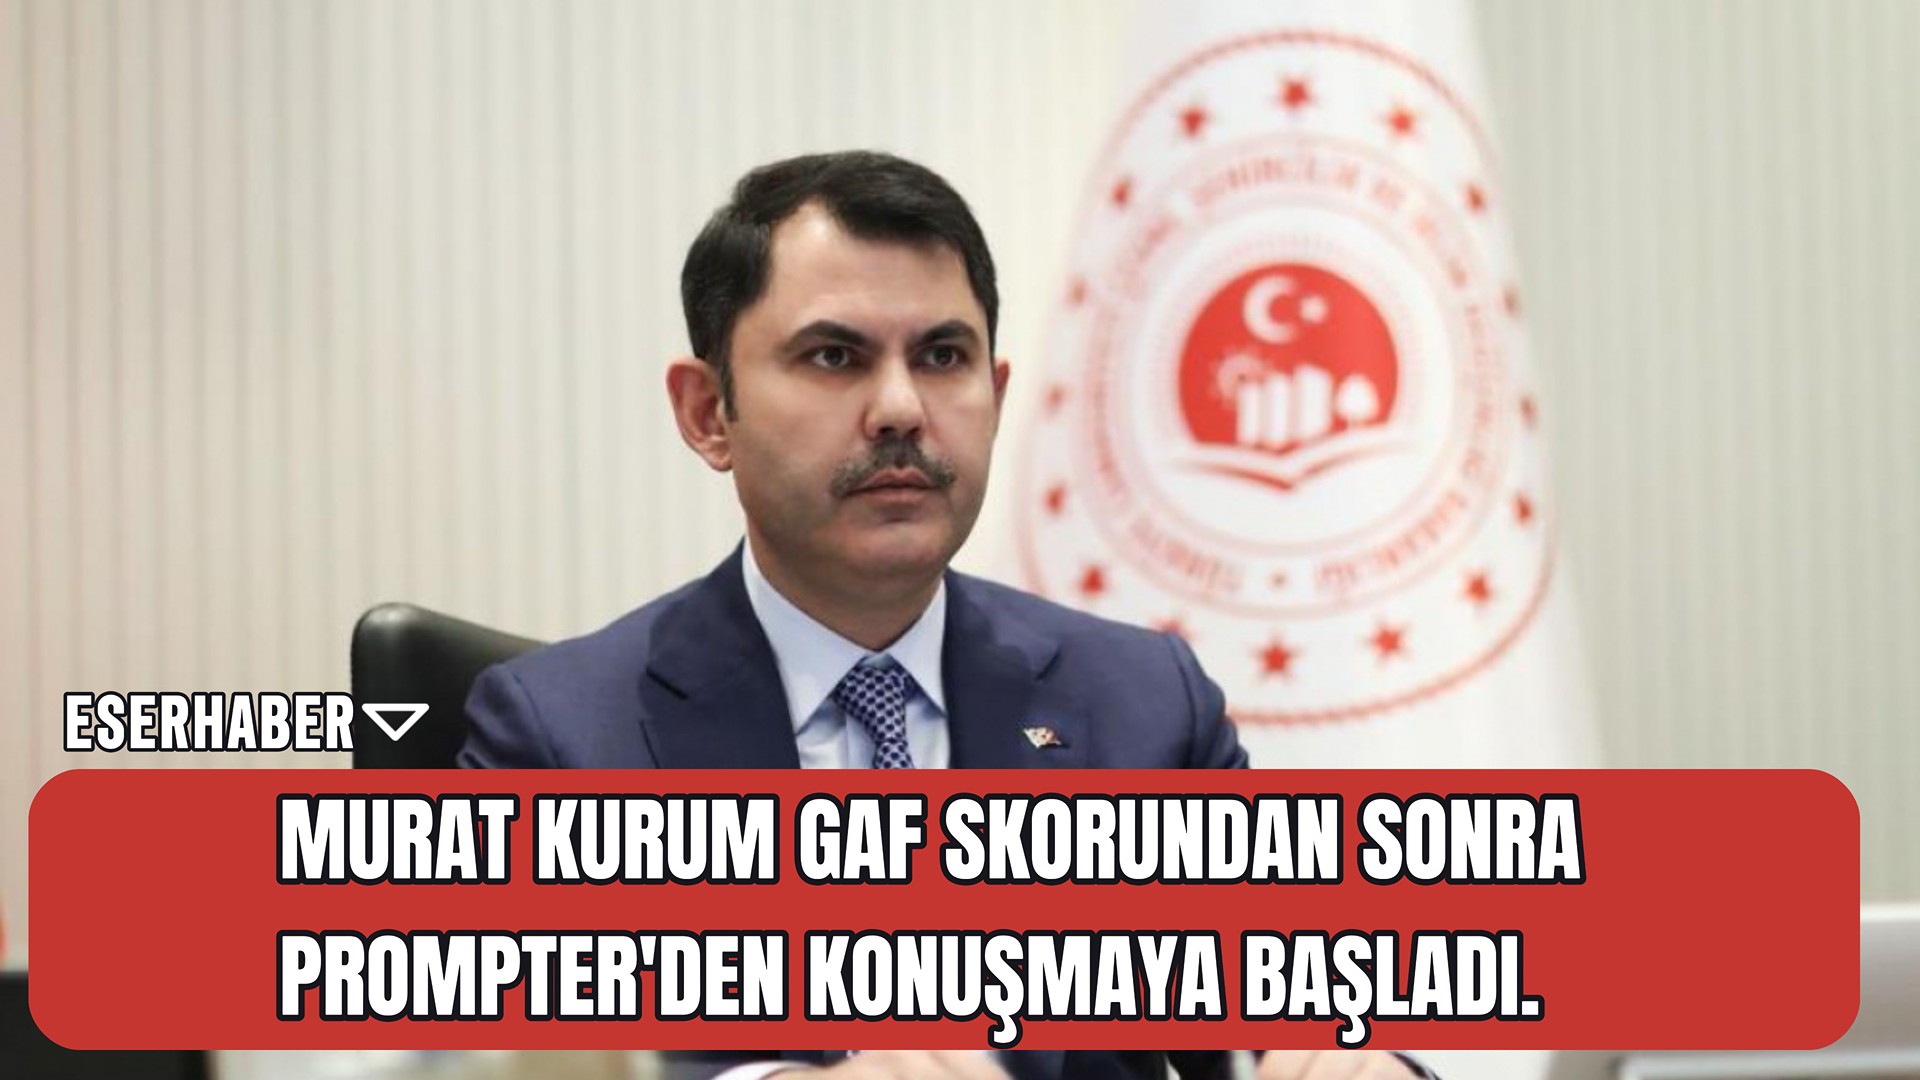 Yaptığı gaflarla gündem olan AKP’nin İstanbul adayı Murat Kurum konuşmalarında prompter kullanmaya başladı.